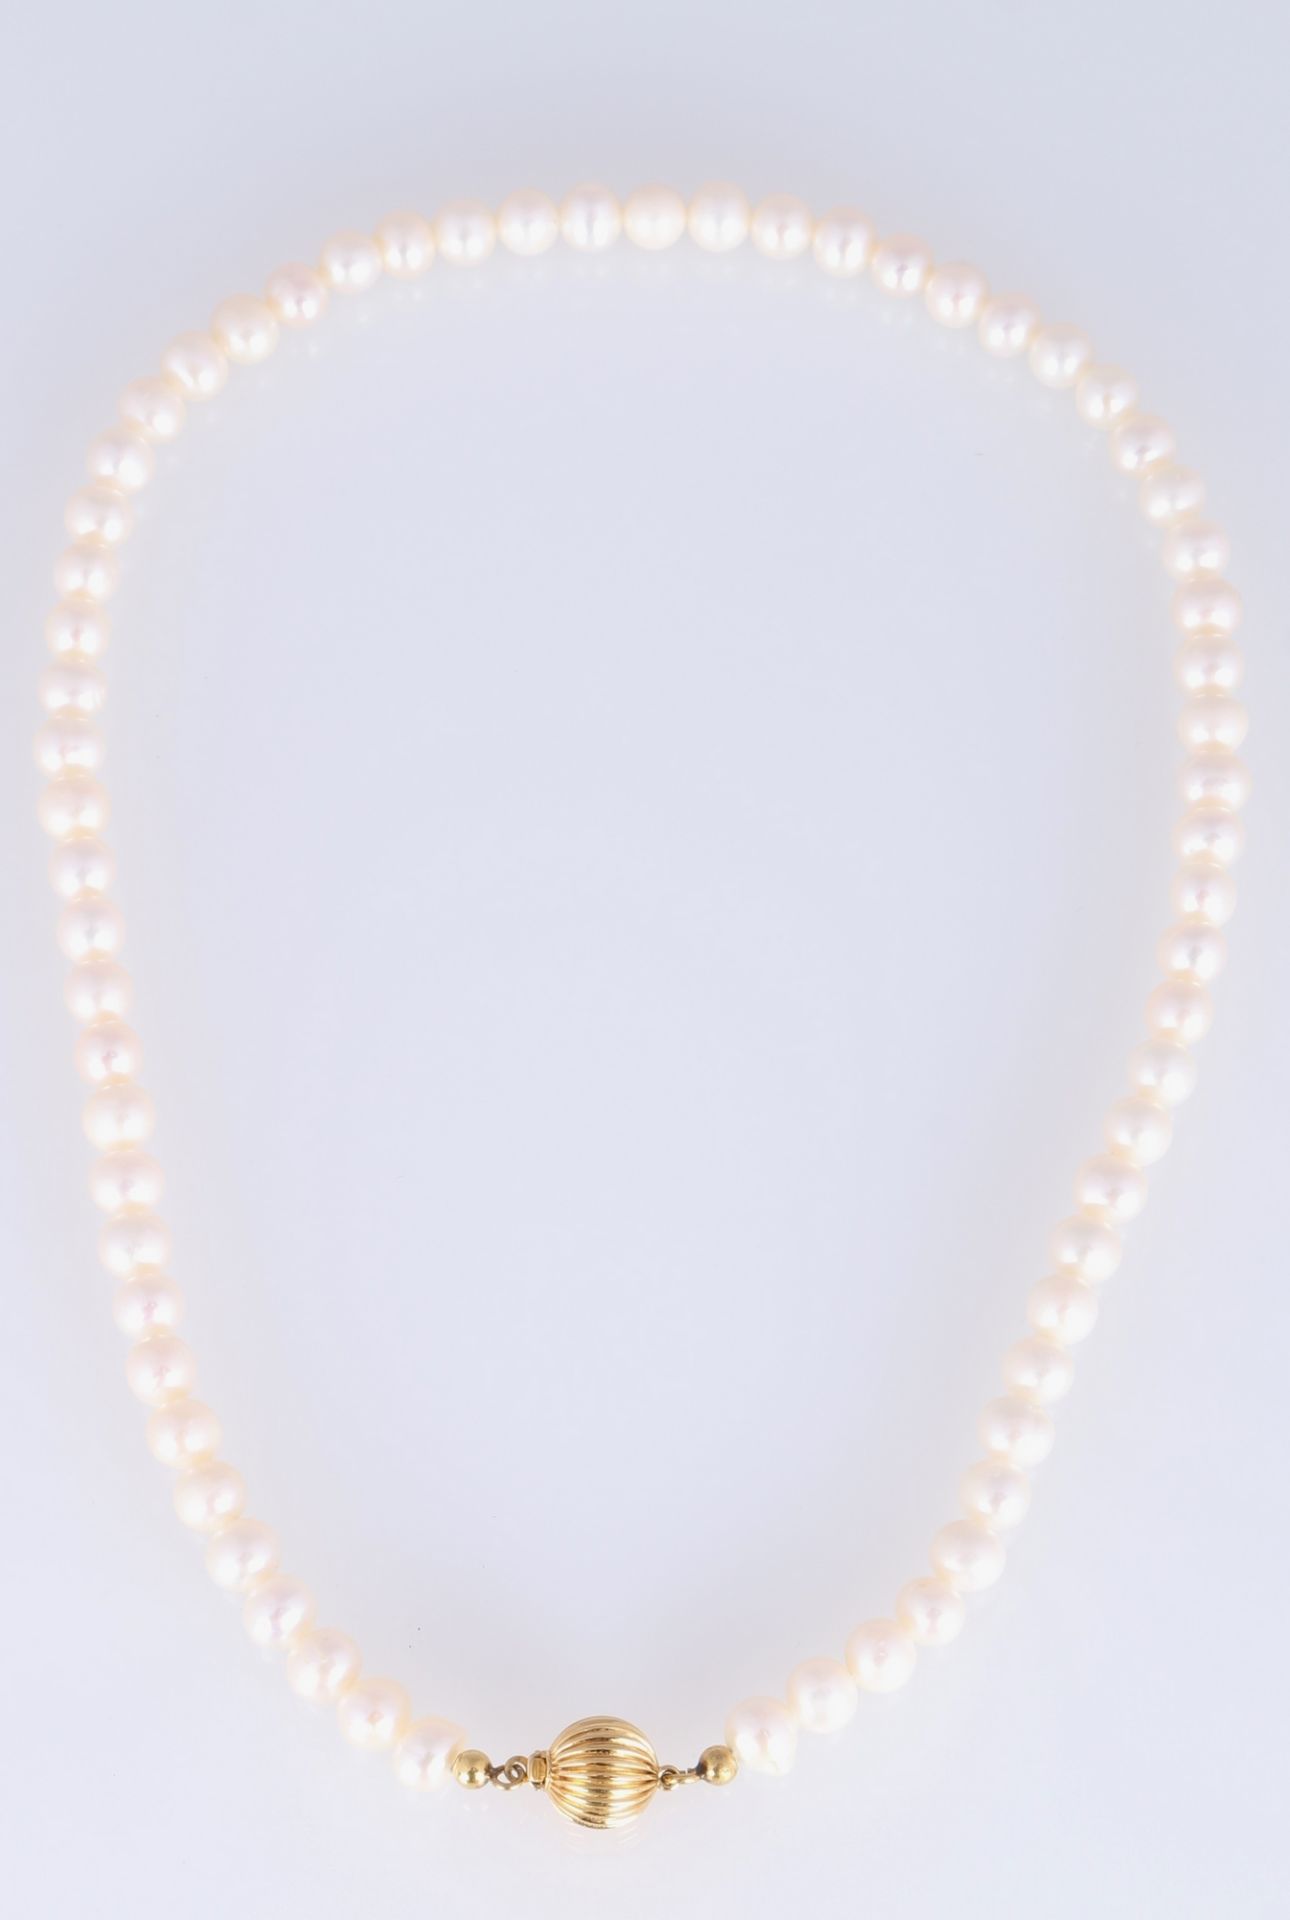 3 Perlenketten mit 375/585 Gold-Verschluss, pearl necklace with gold locks, - Bild 3 aus 5